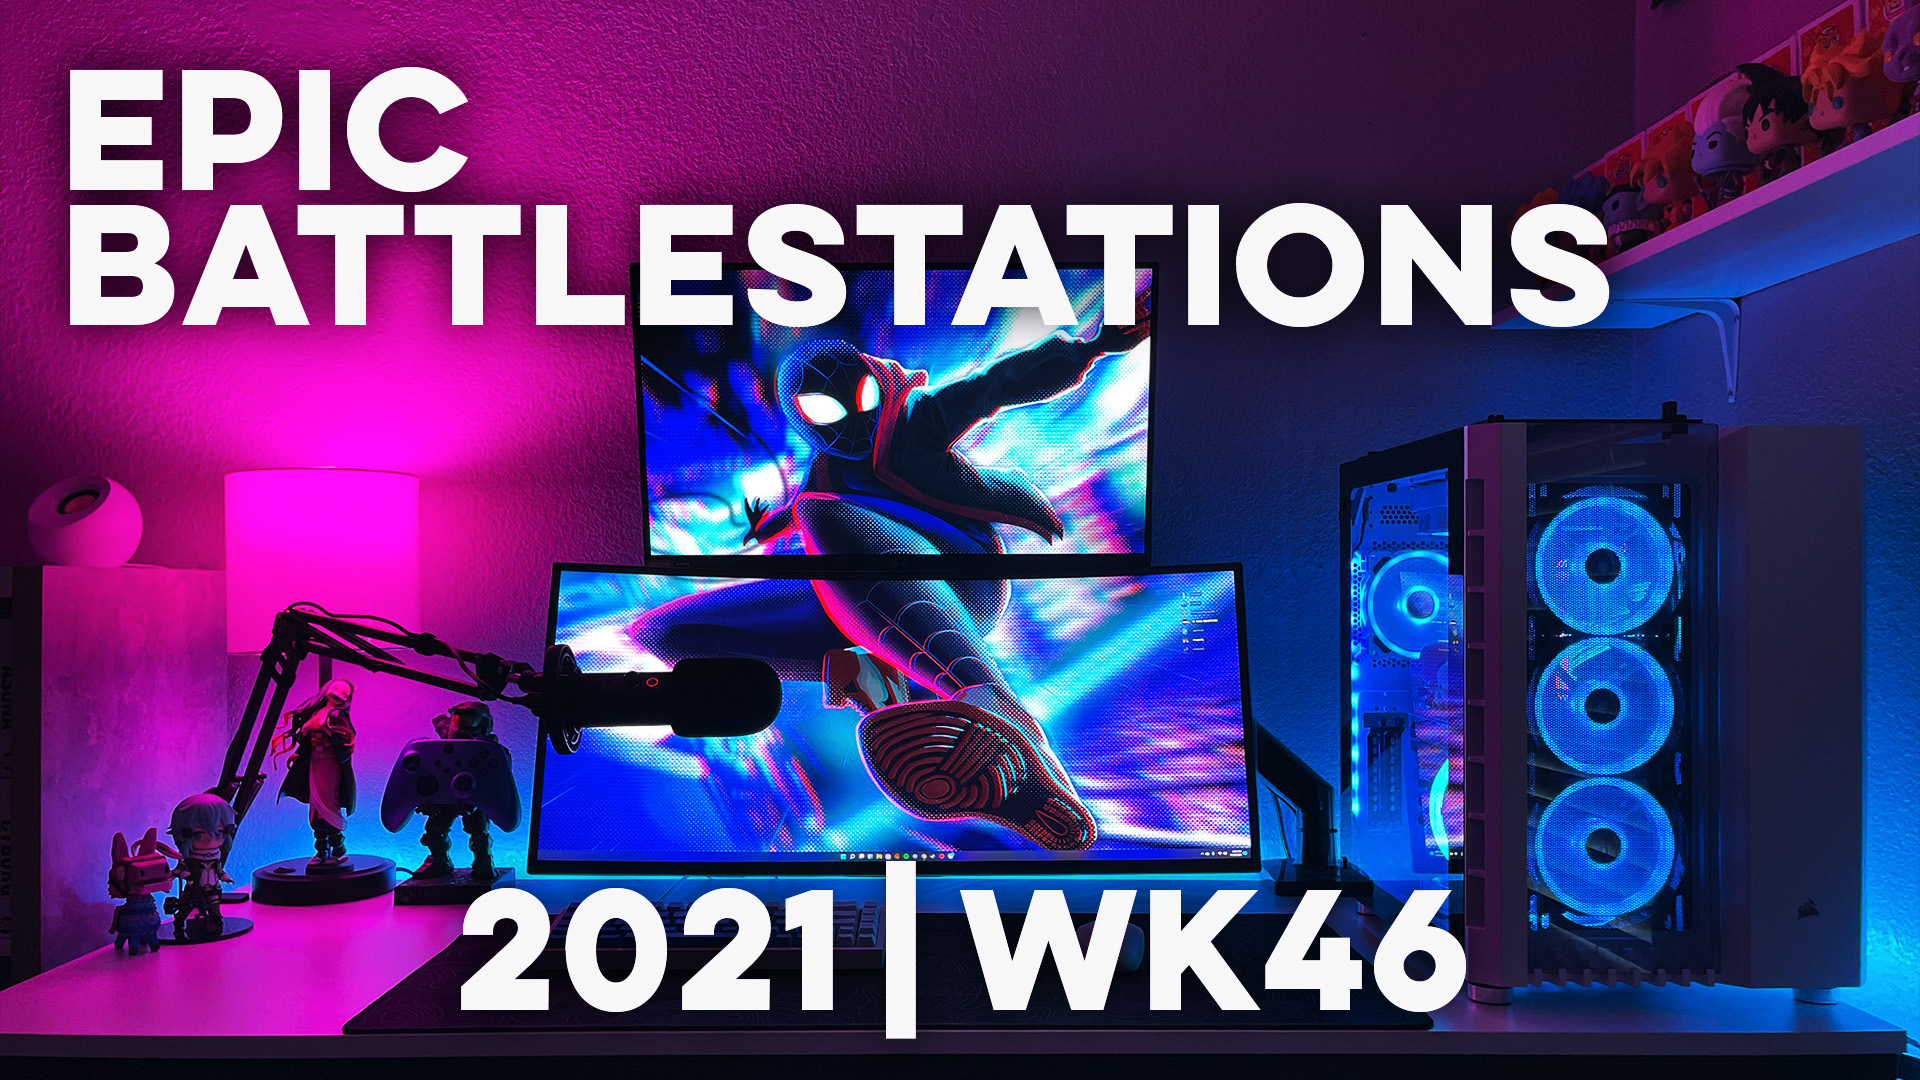 Top 10 EPIC Battlestations for 2021 Week 46!